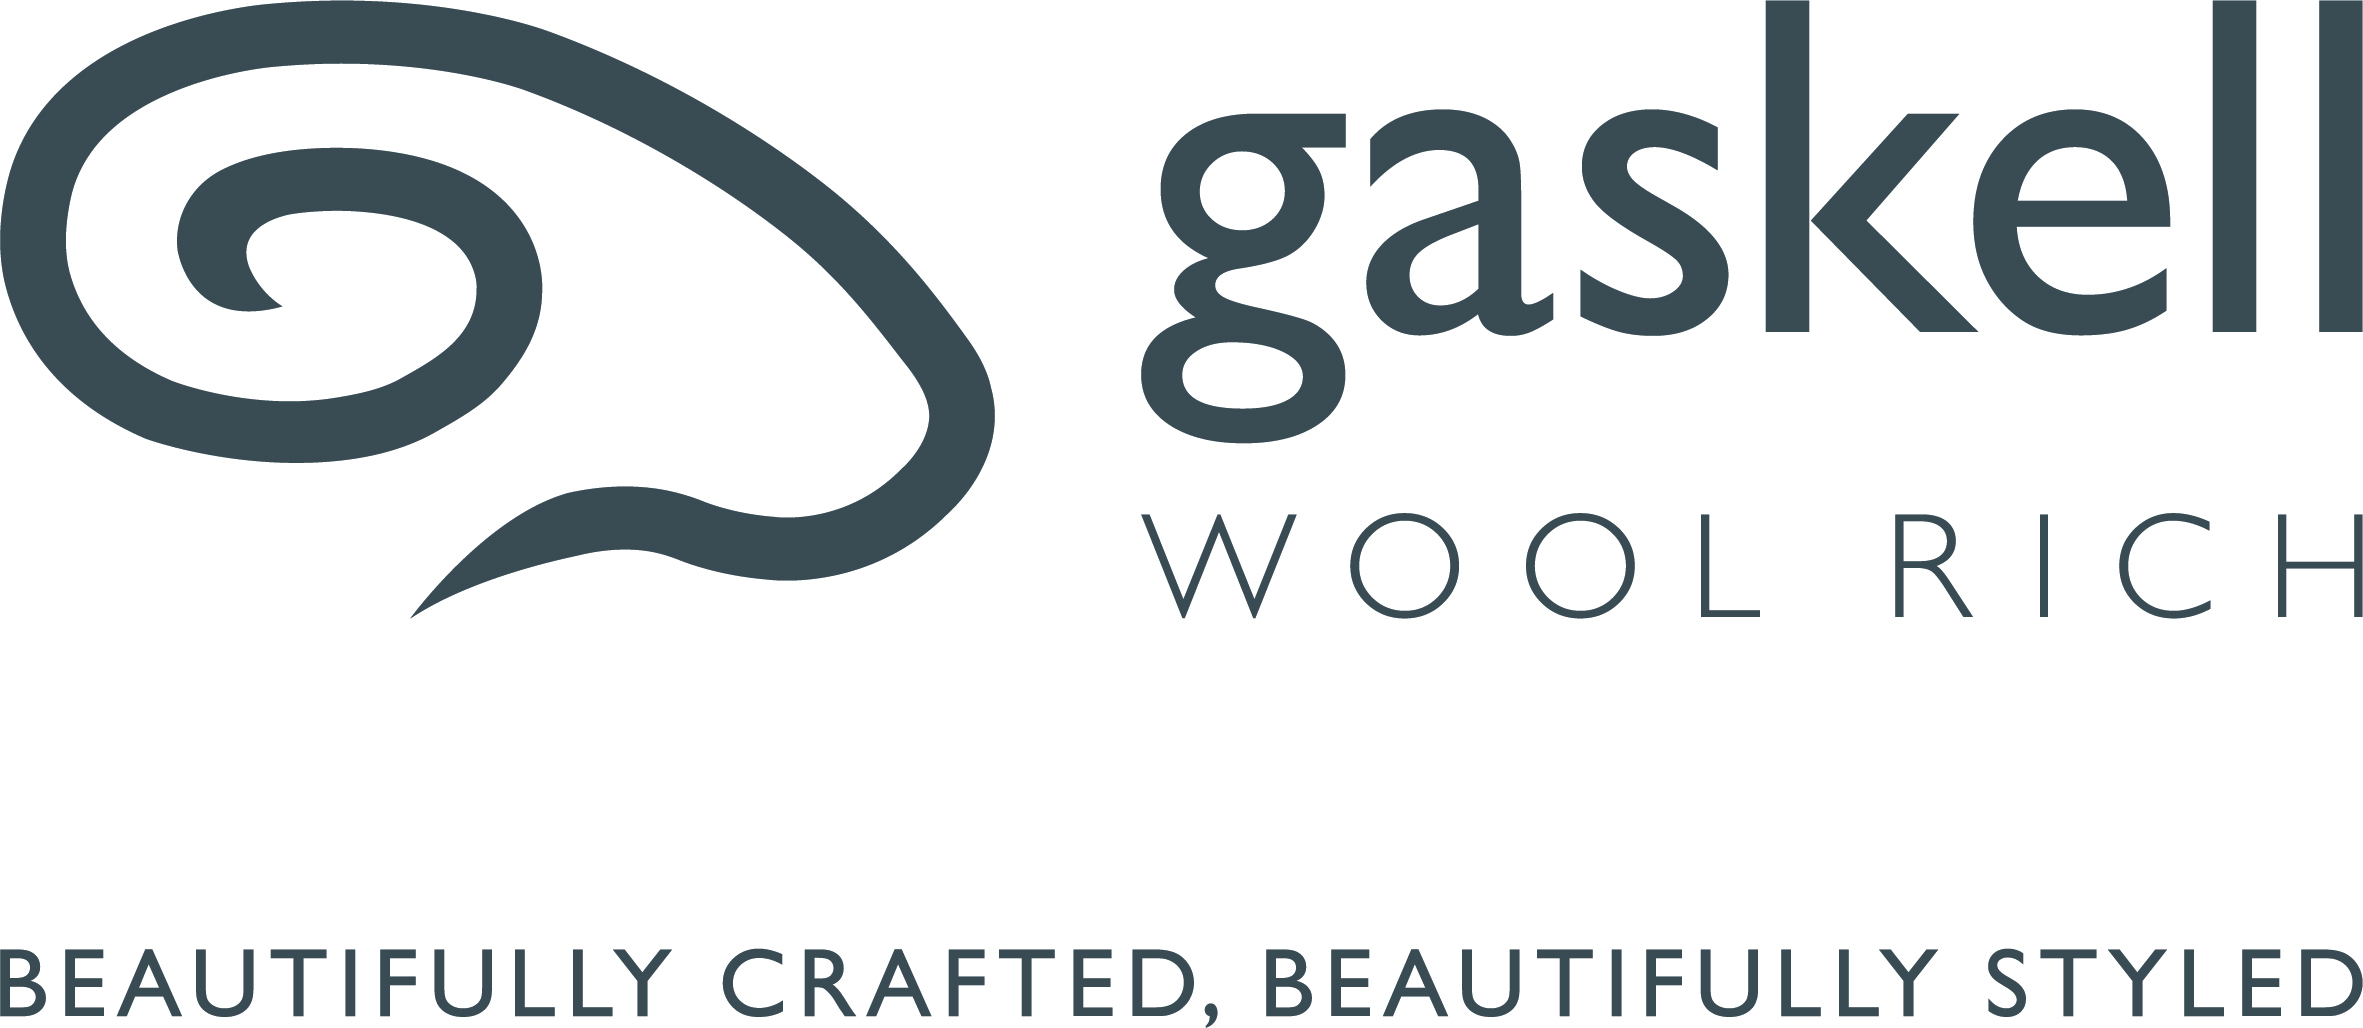 Gaskell Wool 
          </a>Rich Logo